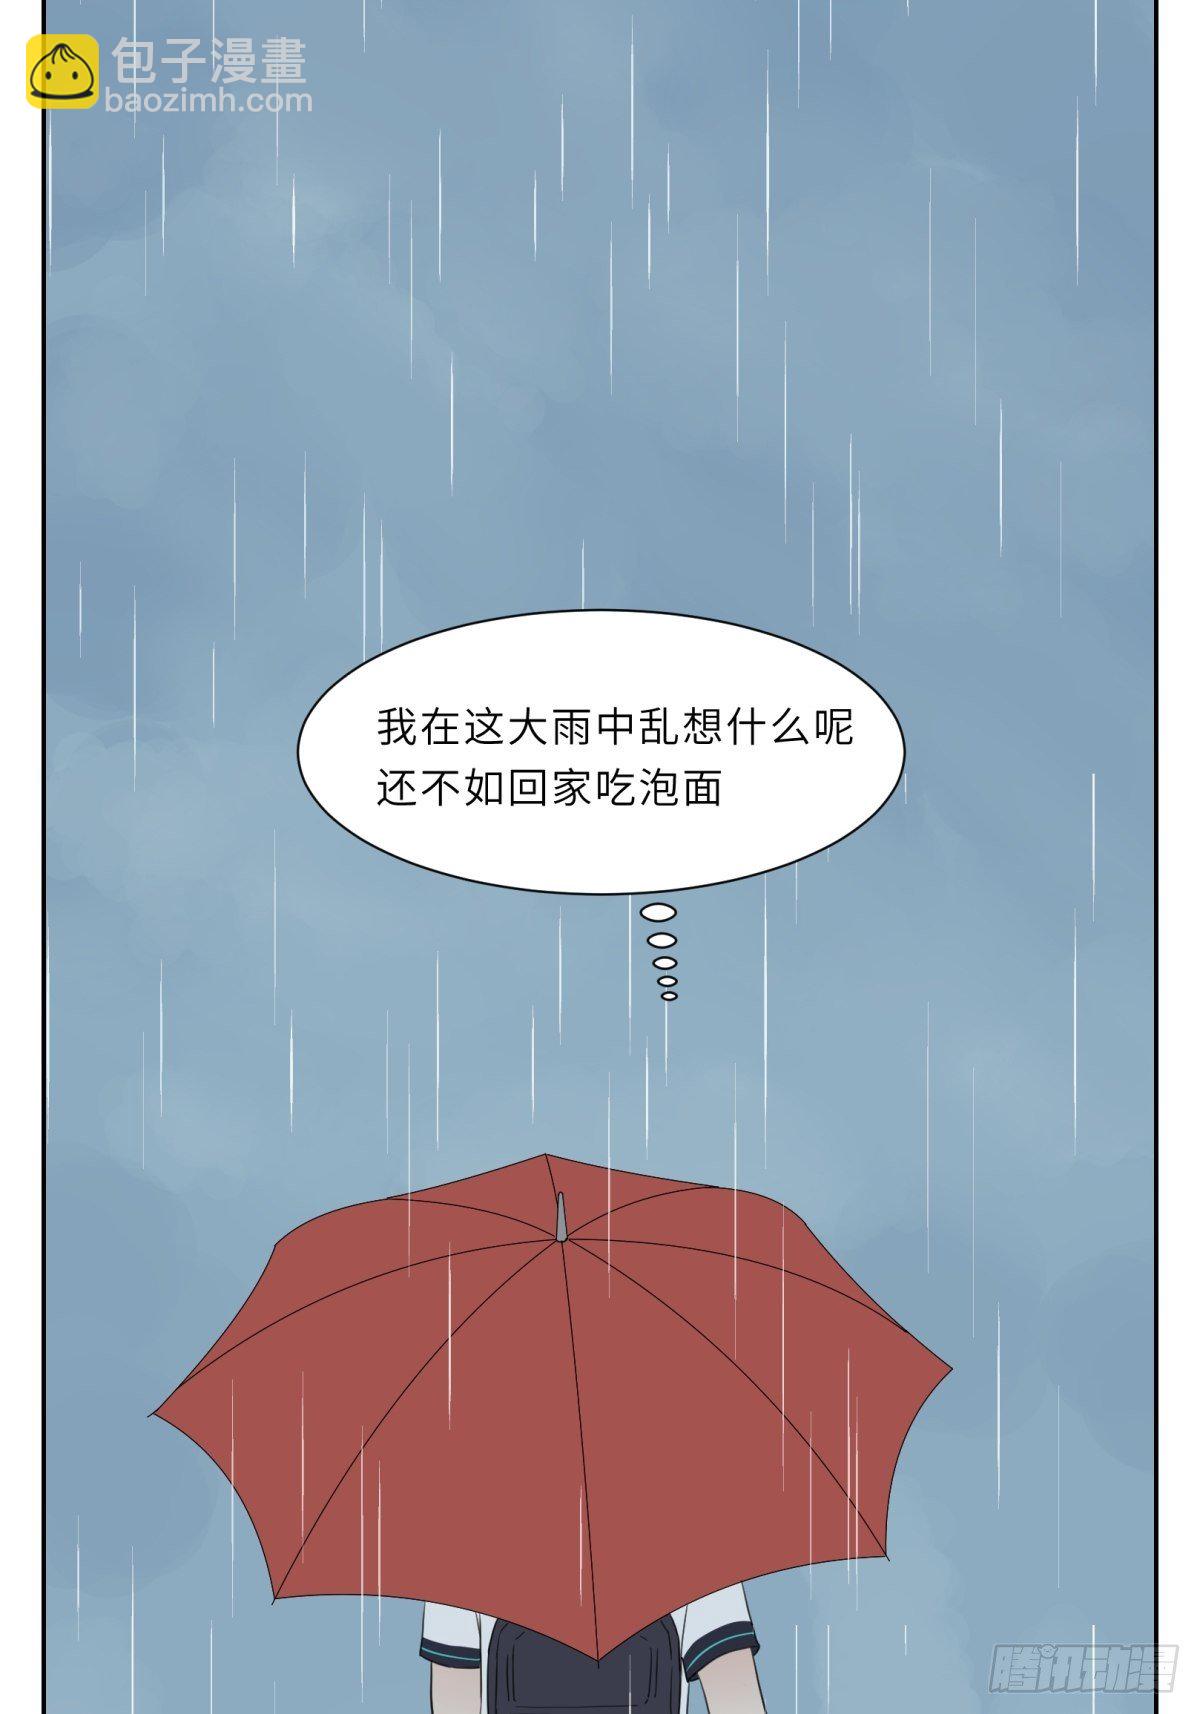 撩花 - 雨中思緒 - 2